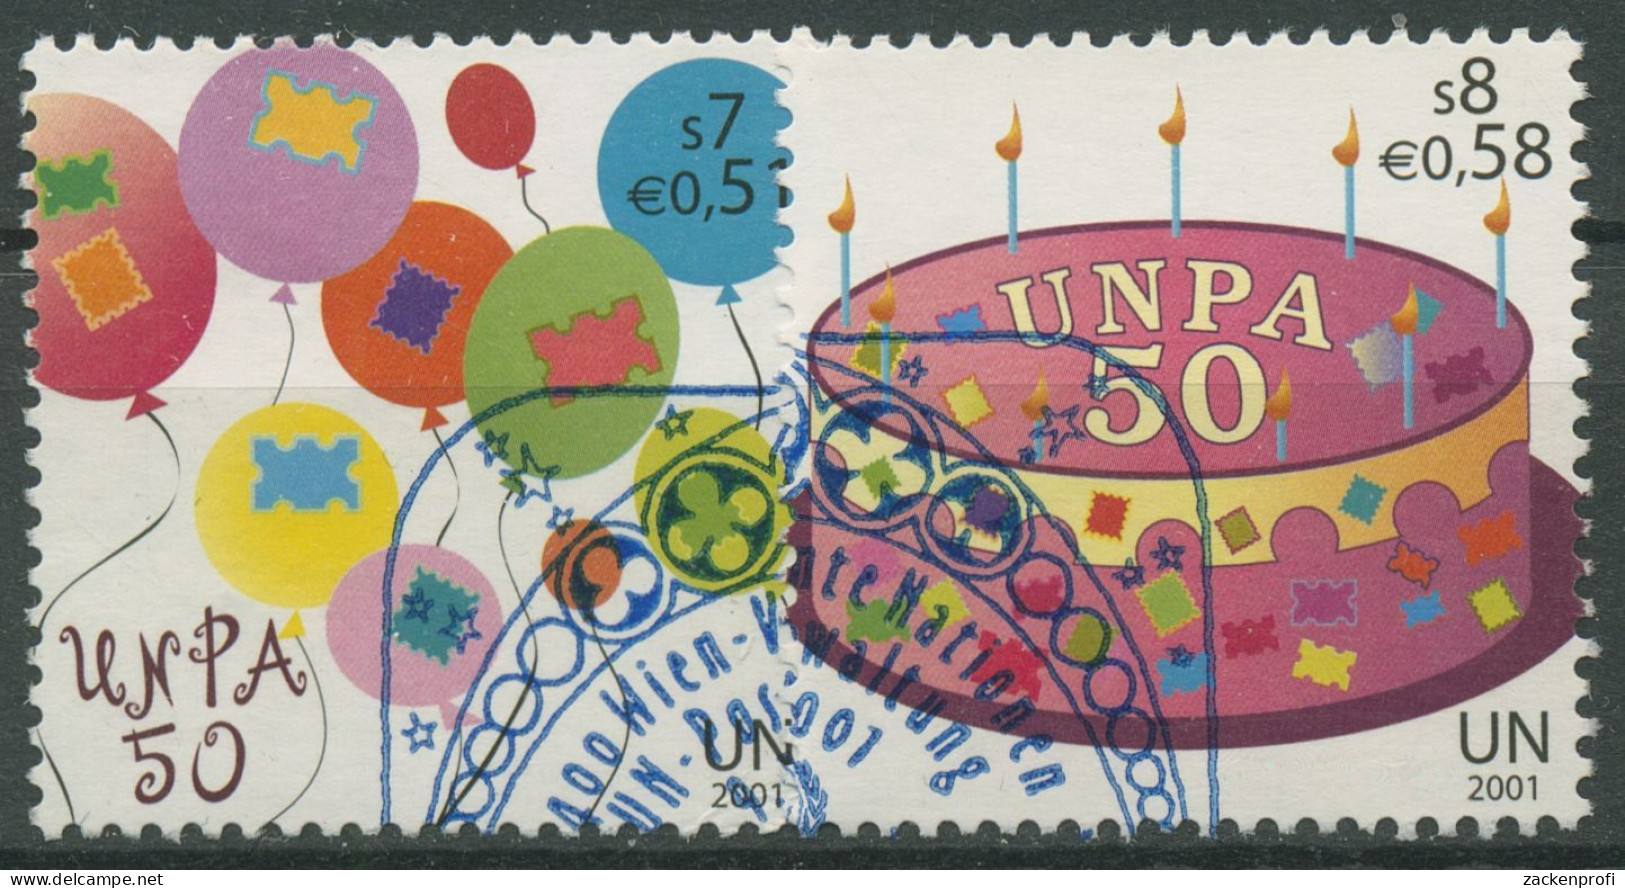 UNO Wien 2001 UN-Postverwaltung Geburtstagsgrüße 342/43 Gestempelt - Usados